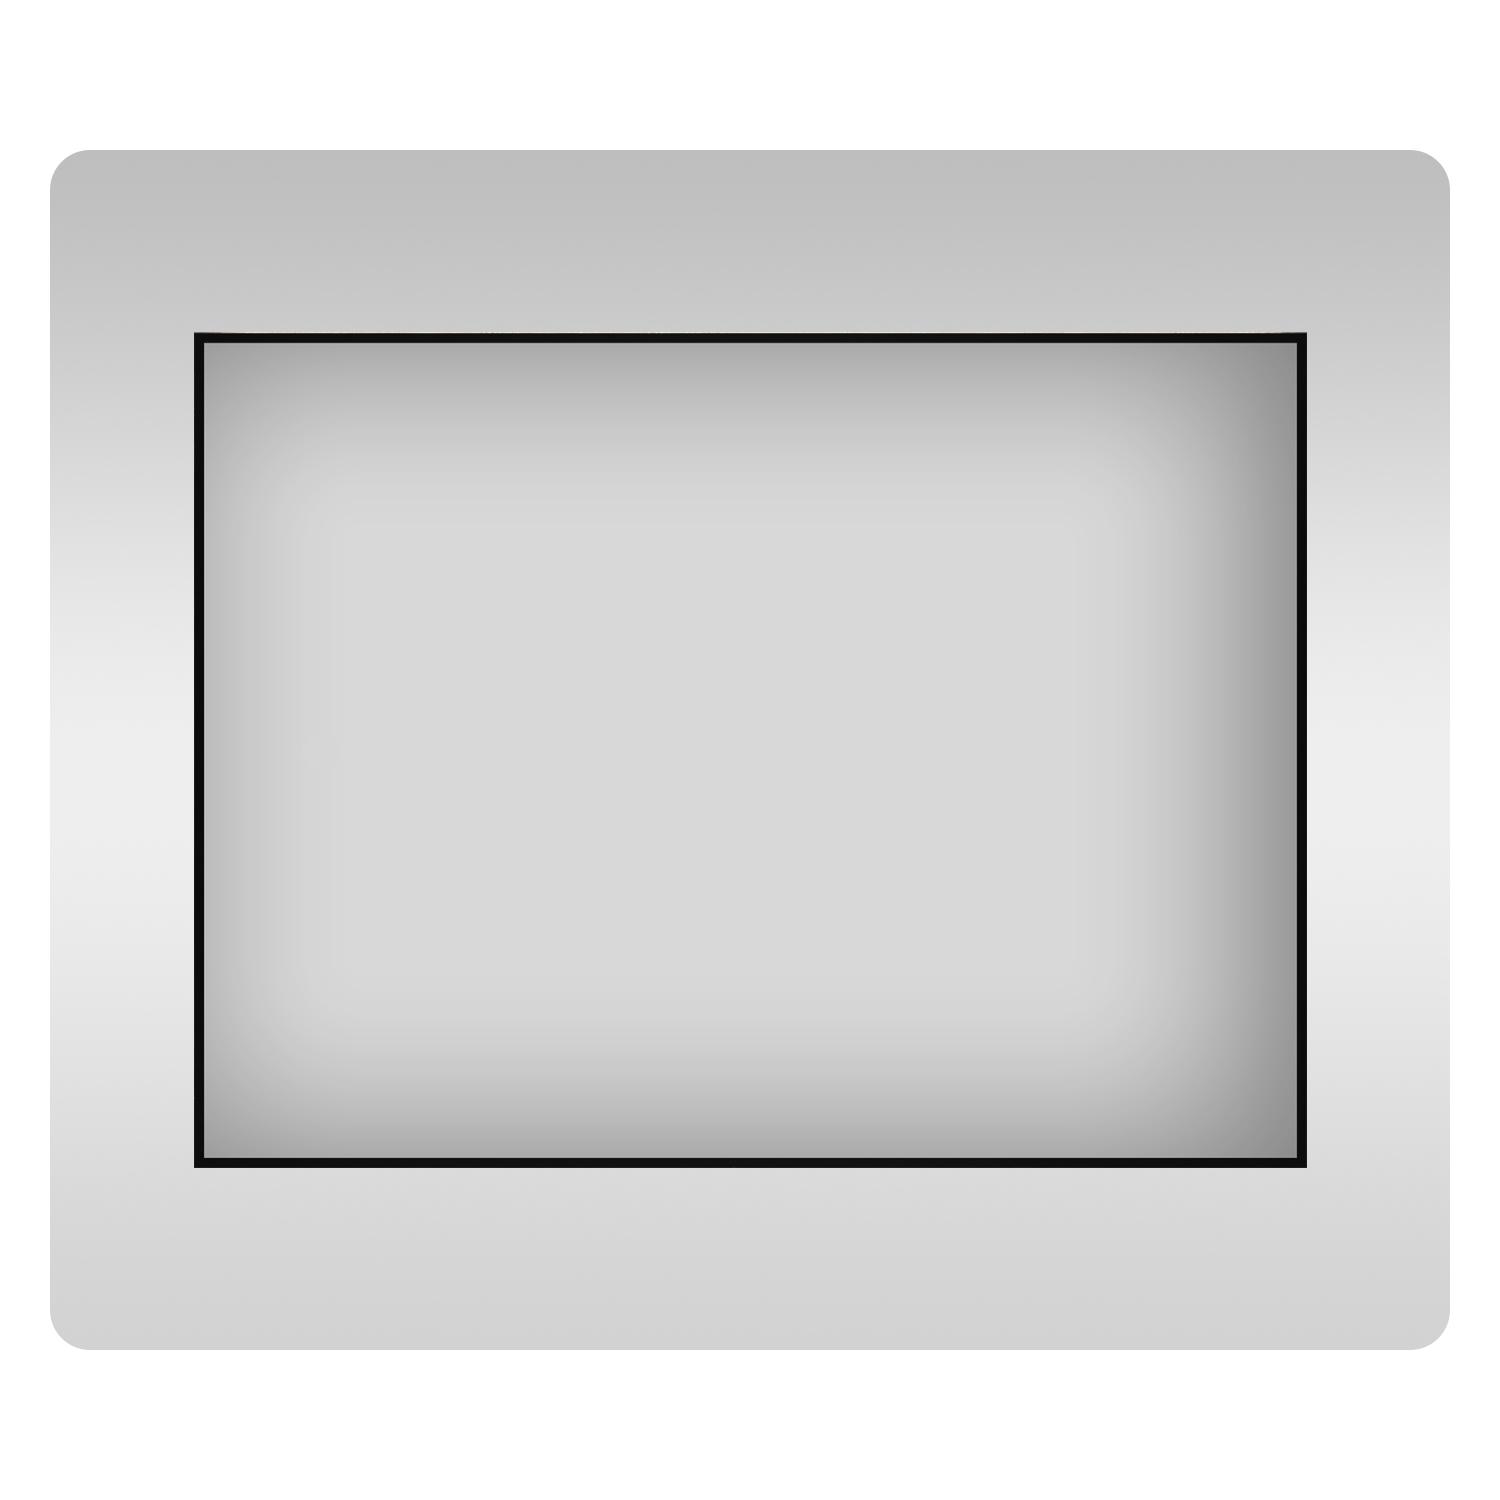 Влагостойкое прямоугольное зеркало Wellsee 7 Rays' Spectrum 172200750, 100х80 см